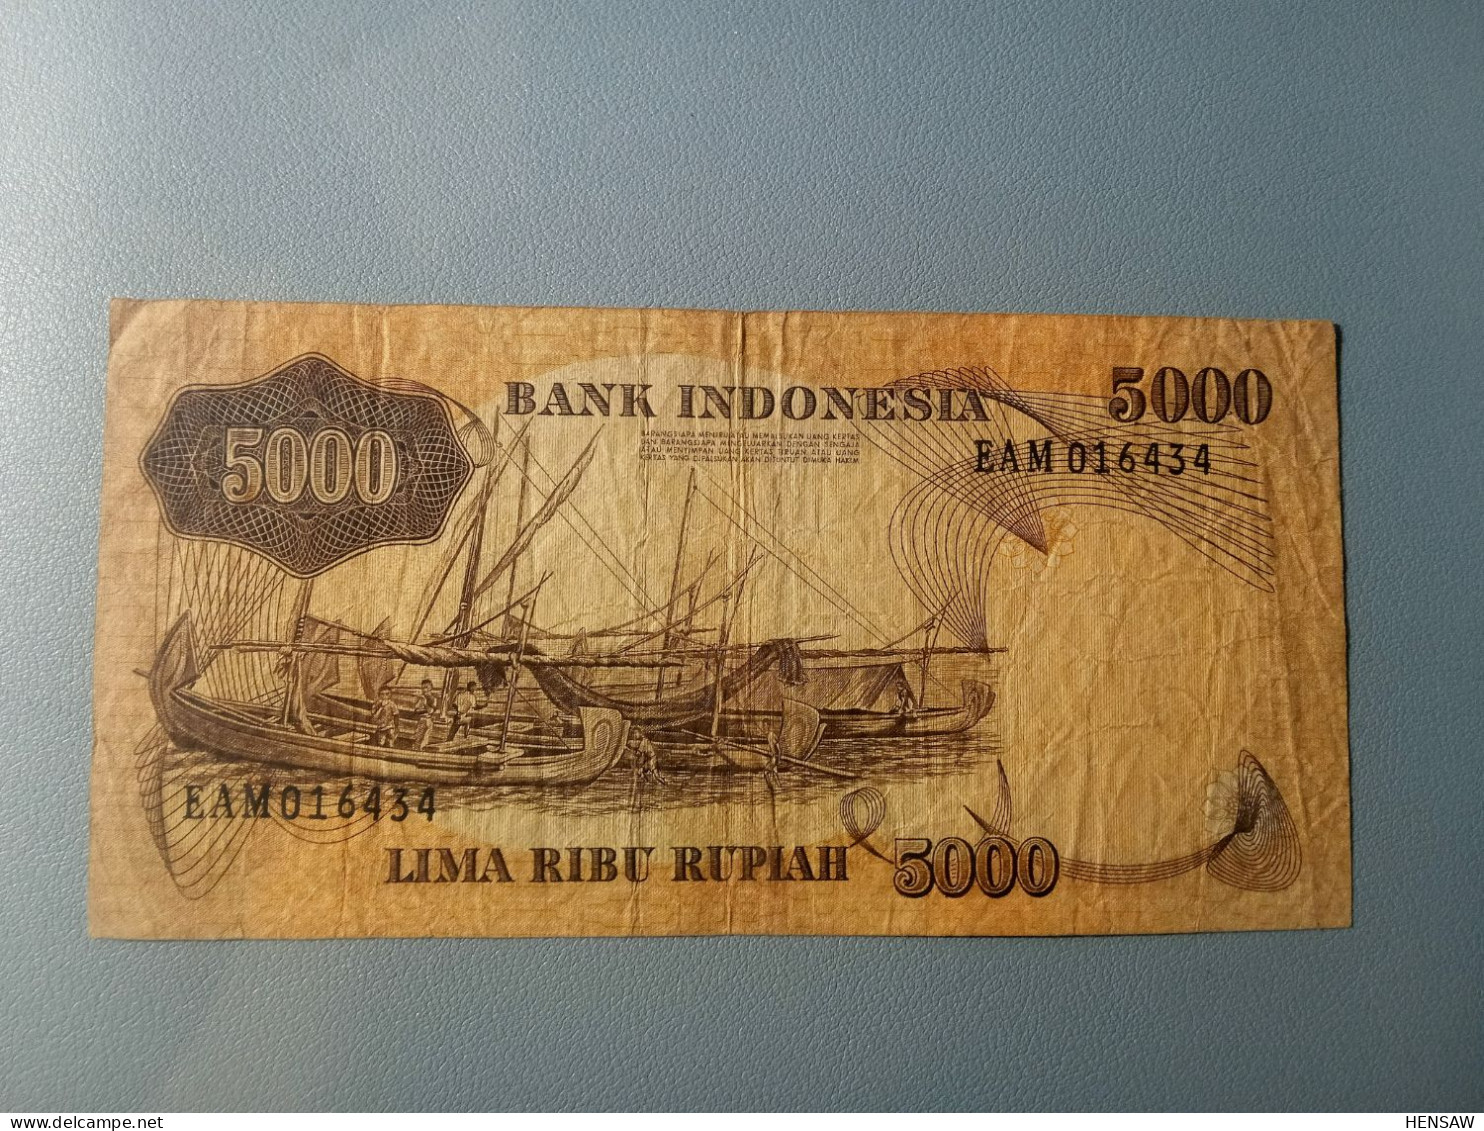 INDONESIA 5000 RUPIAH 1975 P 114 USADO USED - Indonesien